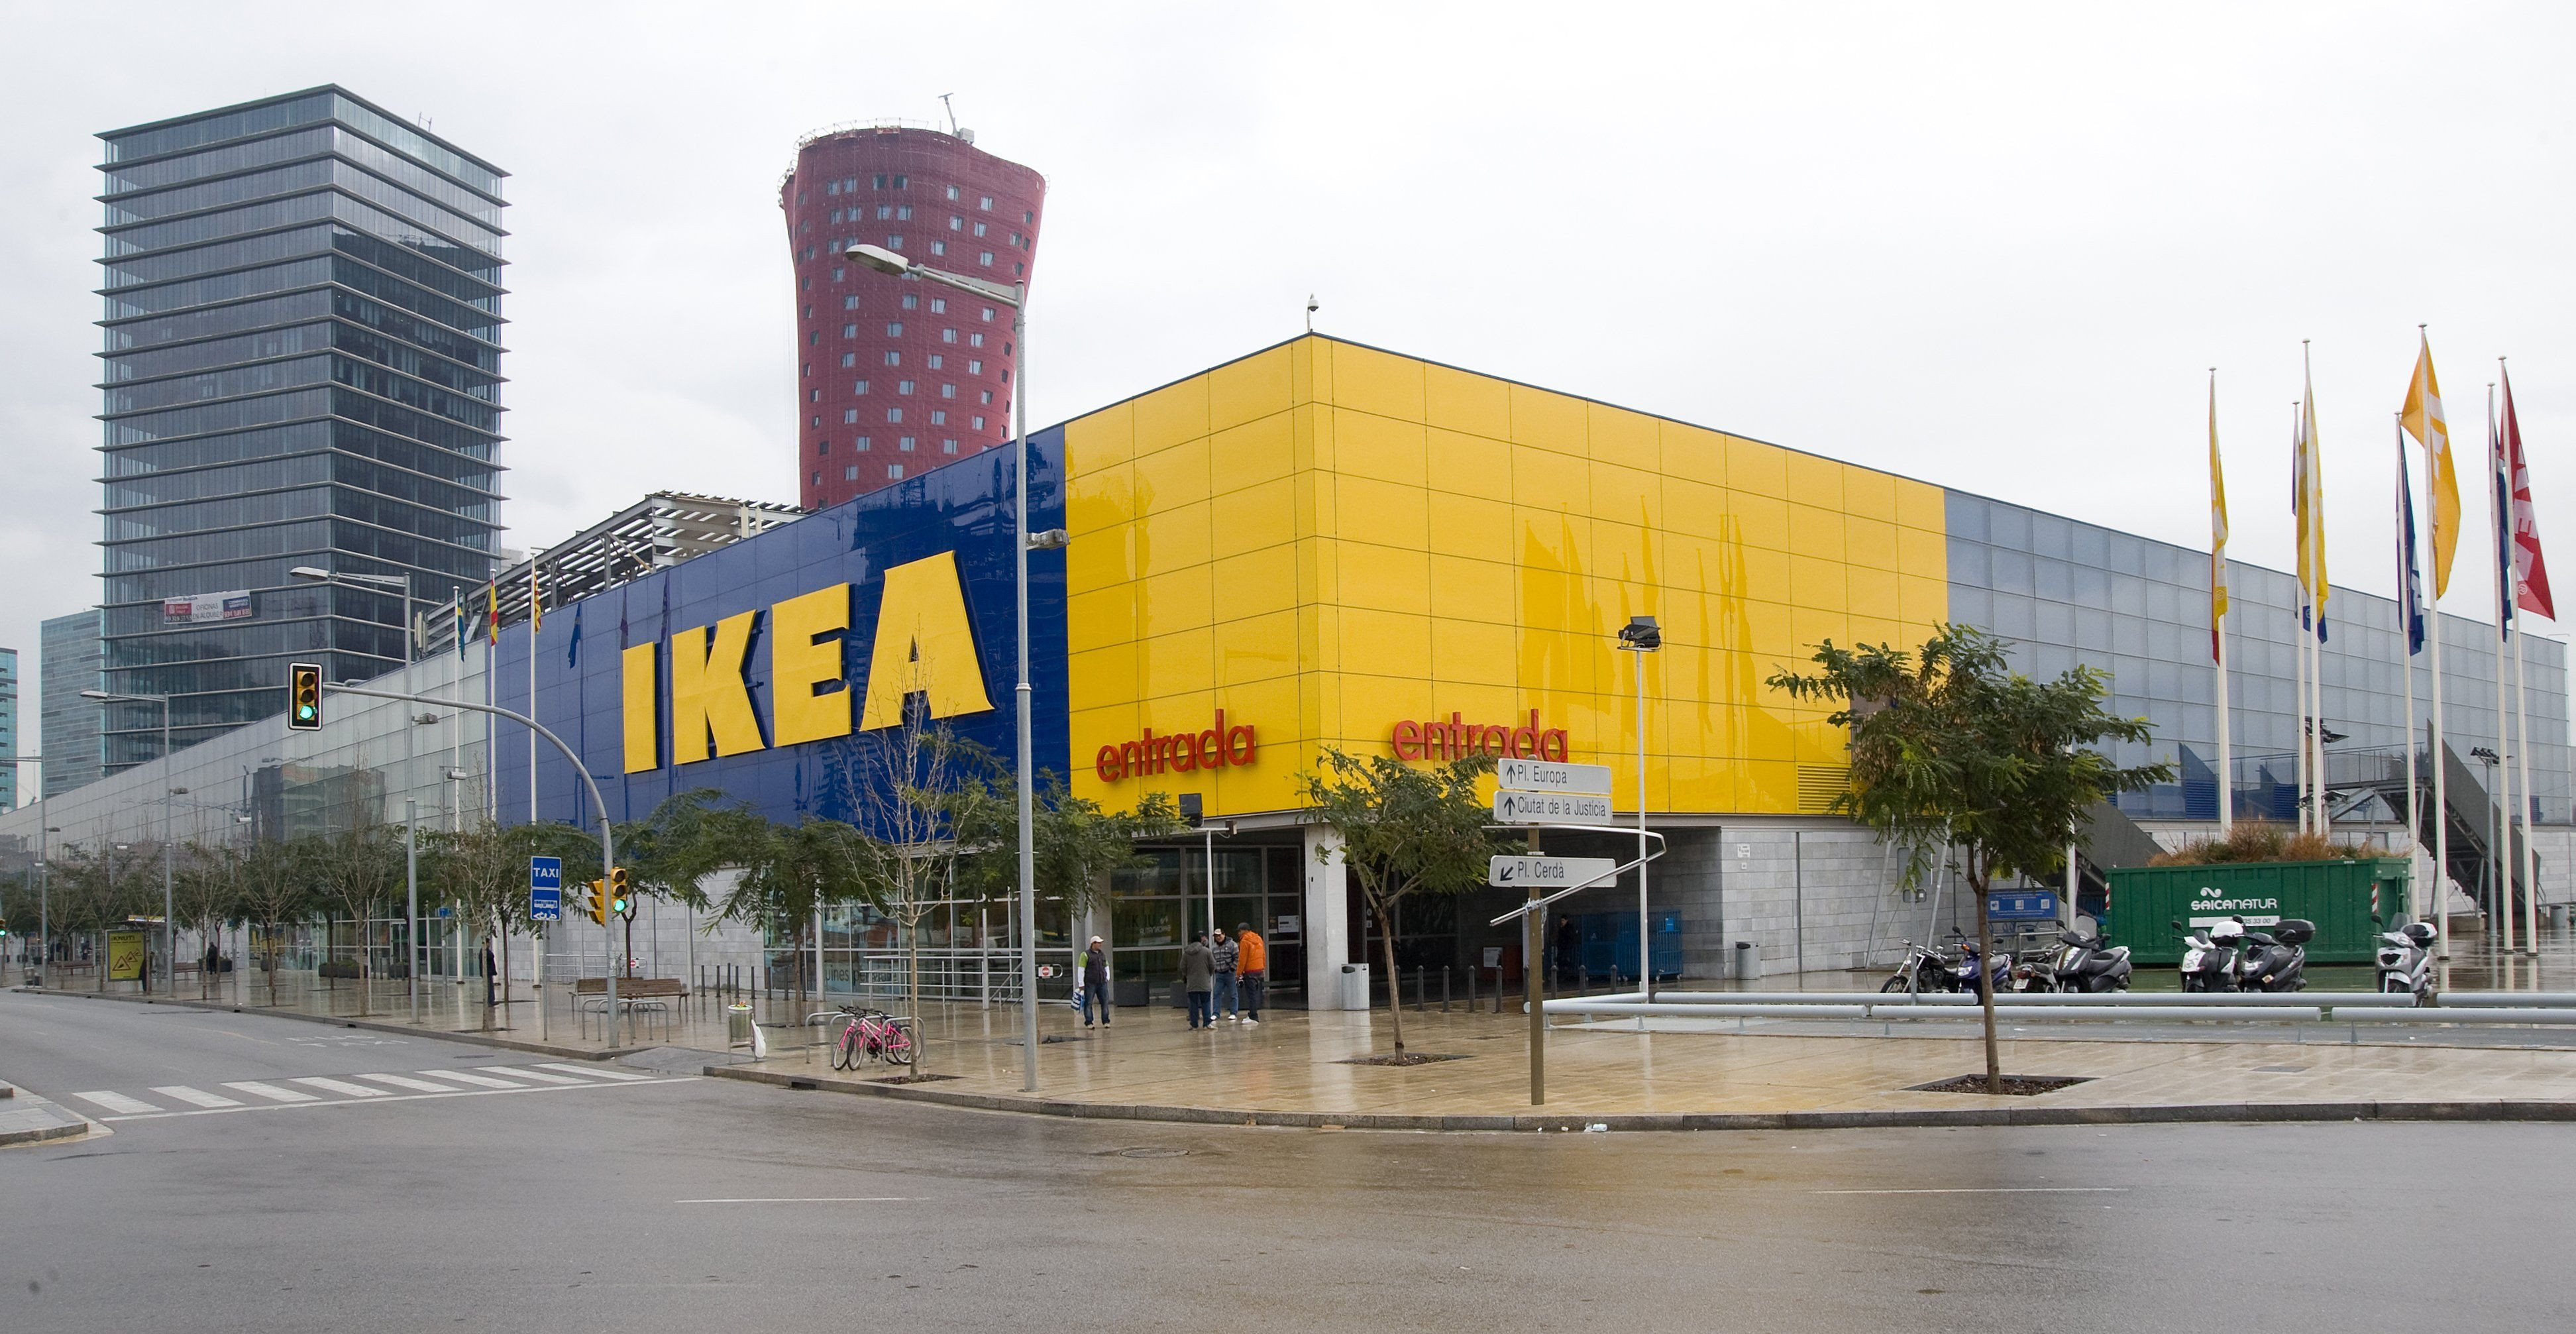 La tienda de Ikea de L'Hospitalet de Llobregat (Barcelona) / IKEA